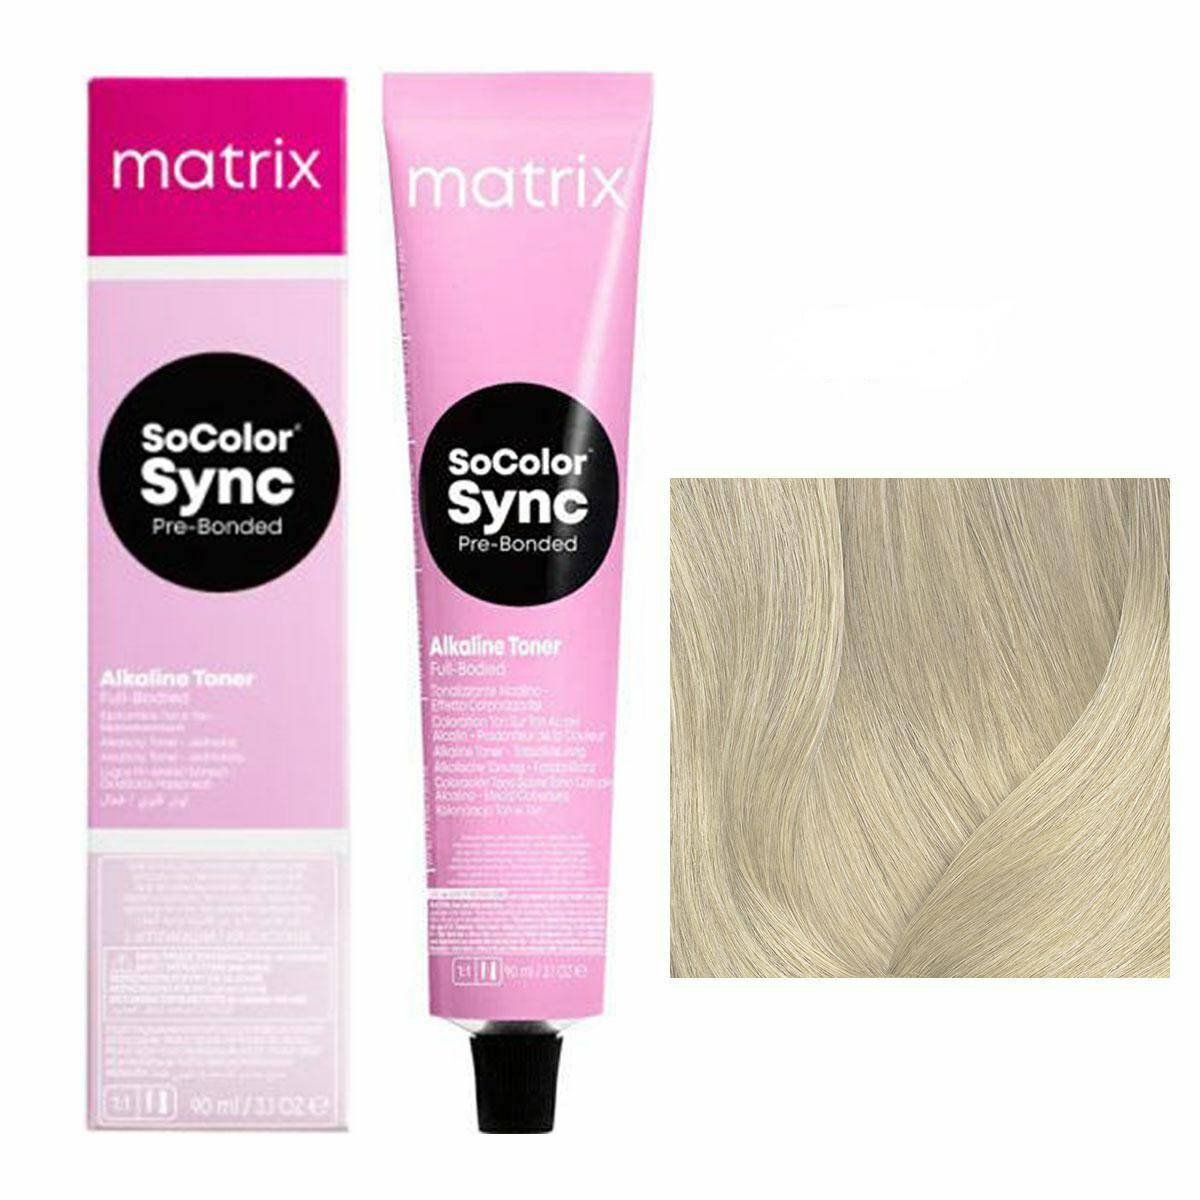 Matrix SoColor Sync Pre-Bonded Farba do włosów - SPN Naturalny pastel, półtrwała koloryzacja ton w ton 90ml